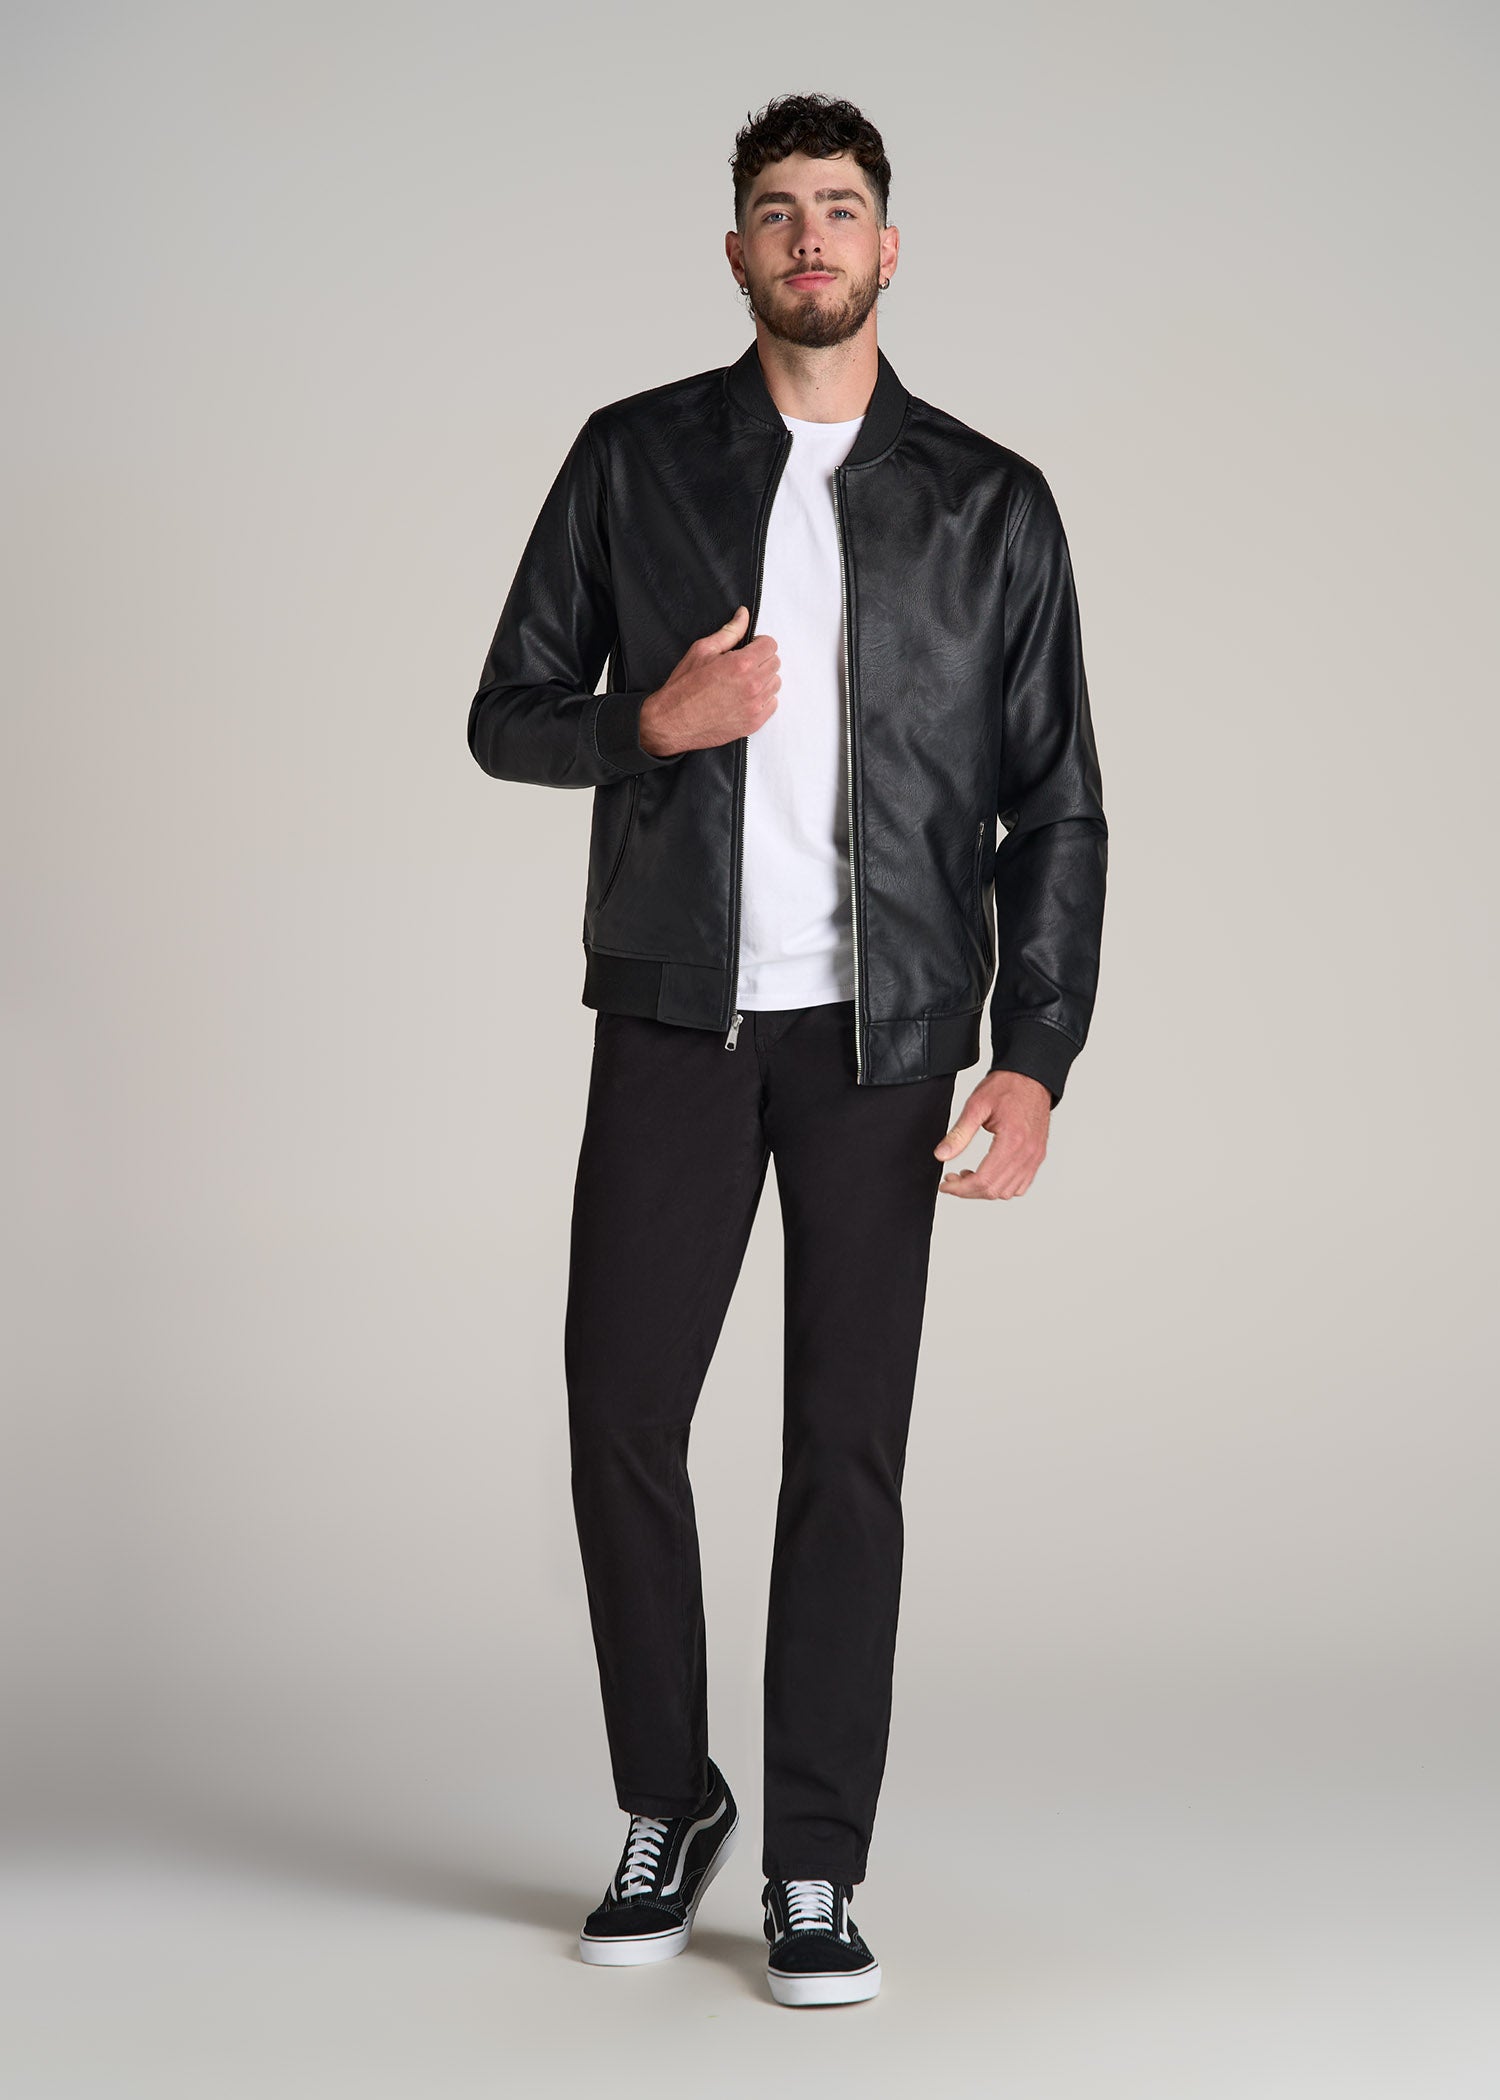 Black leather jacket - Jackets & Coats